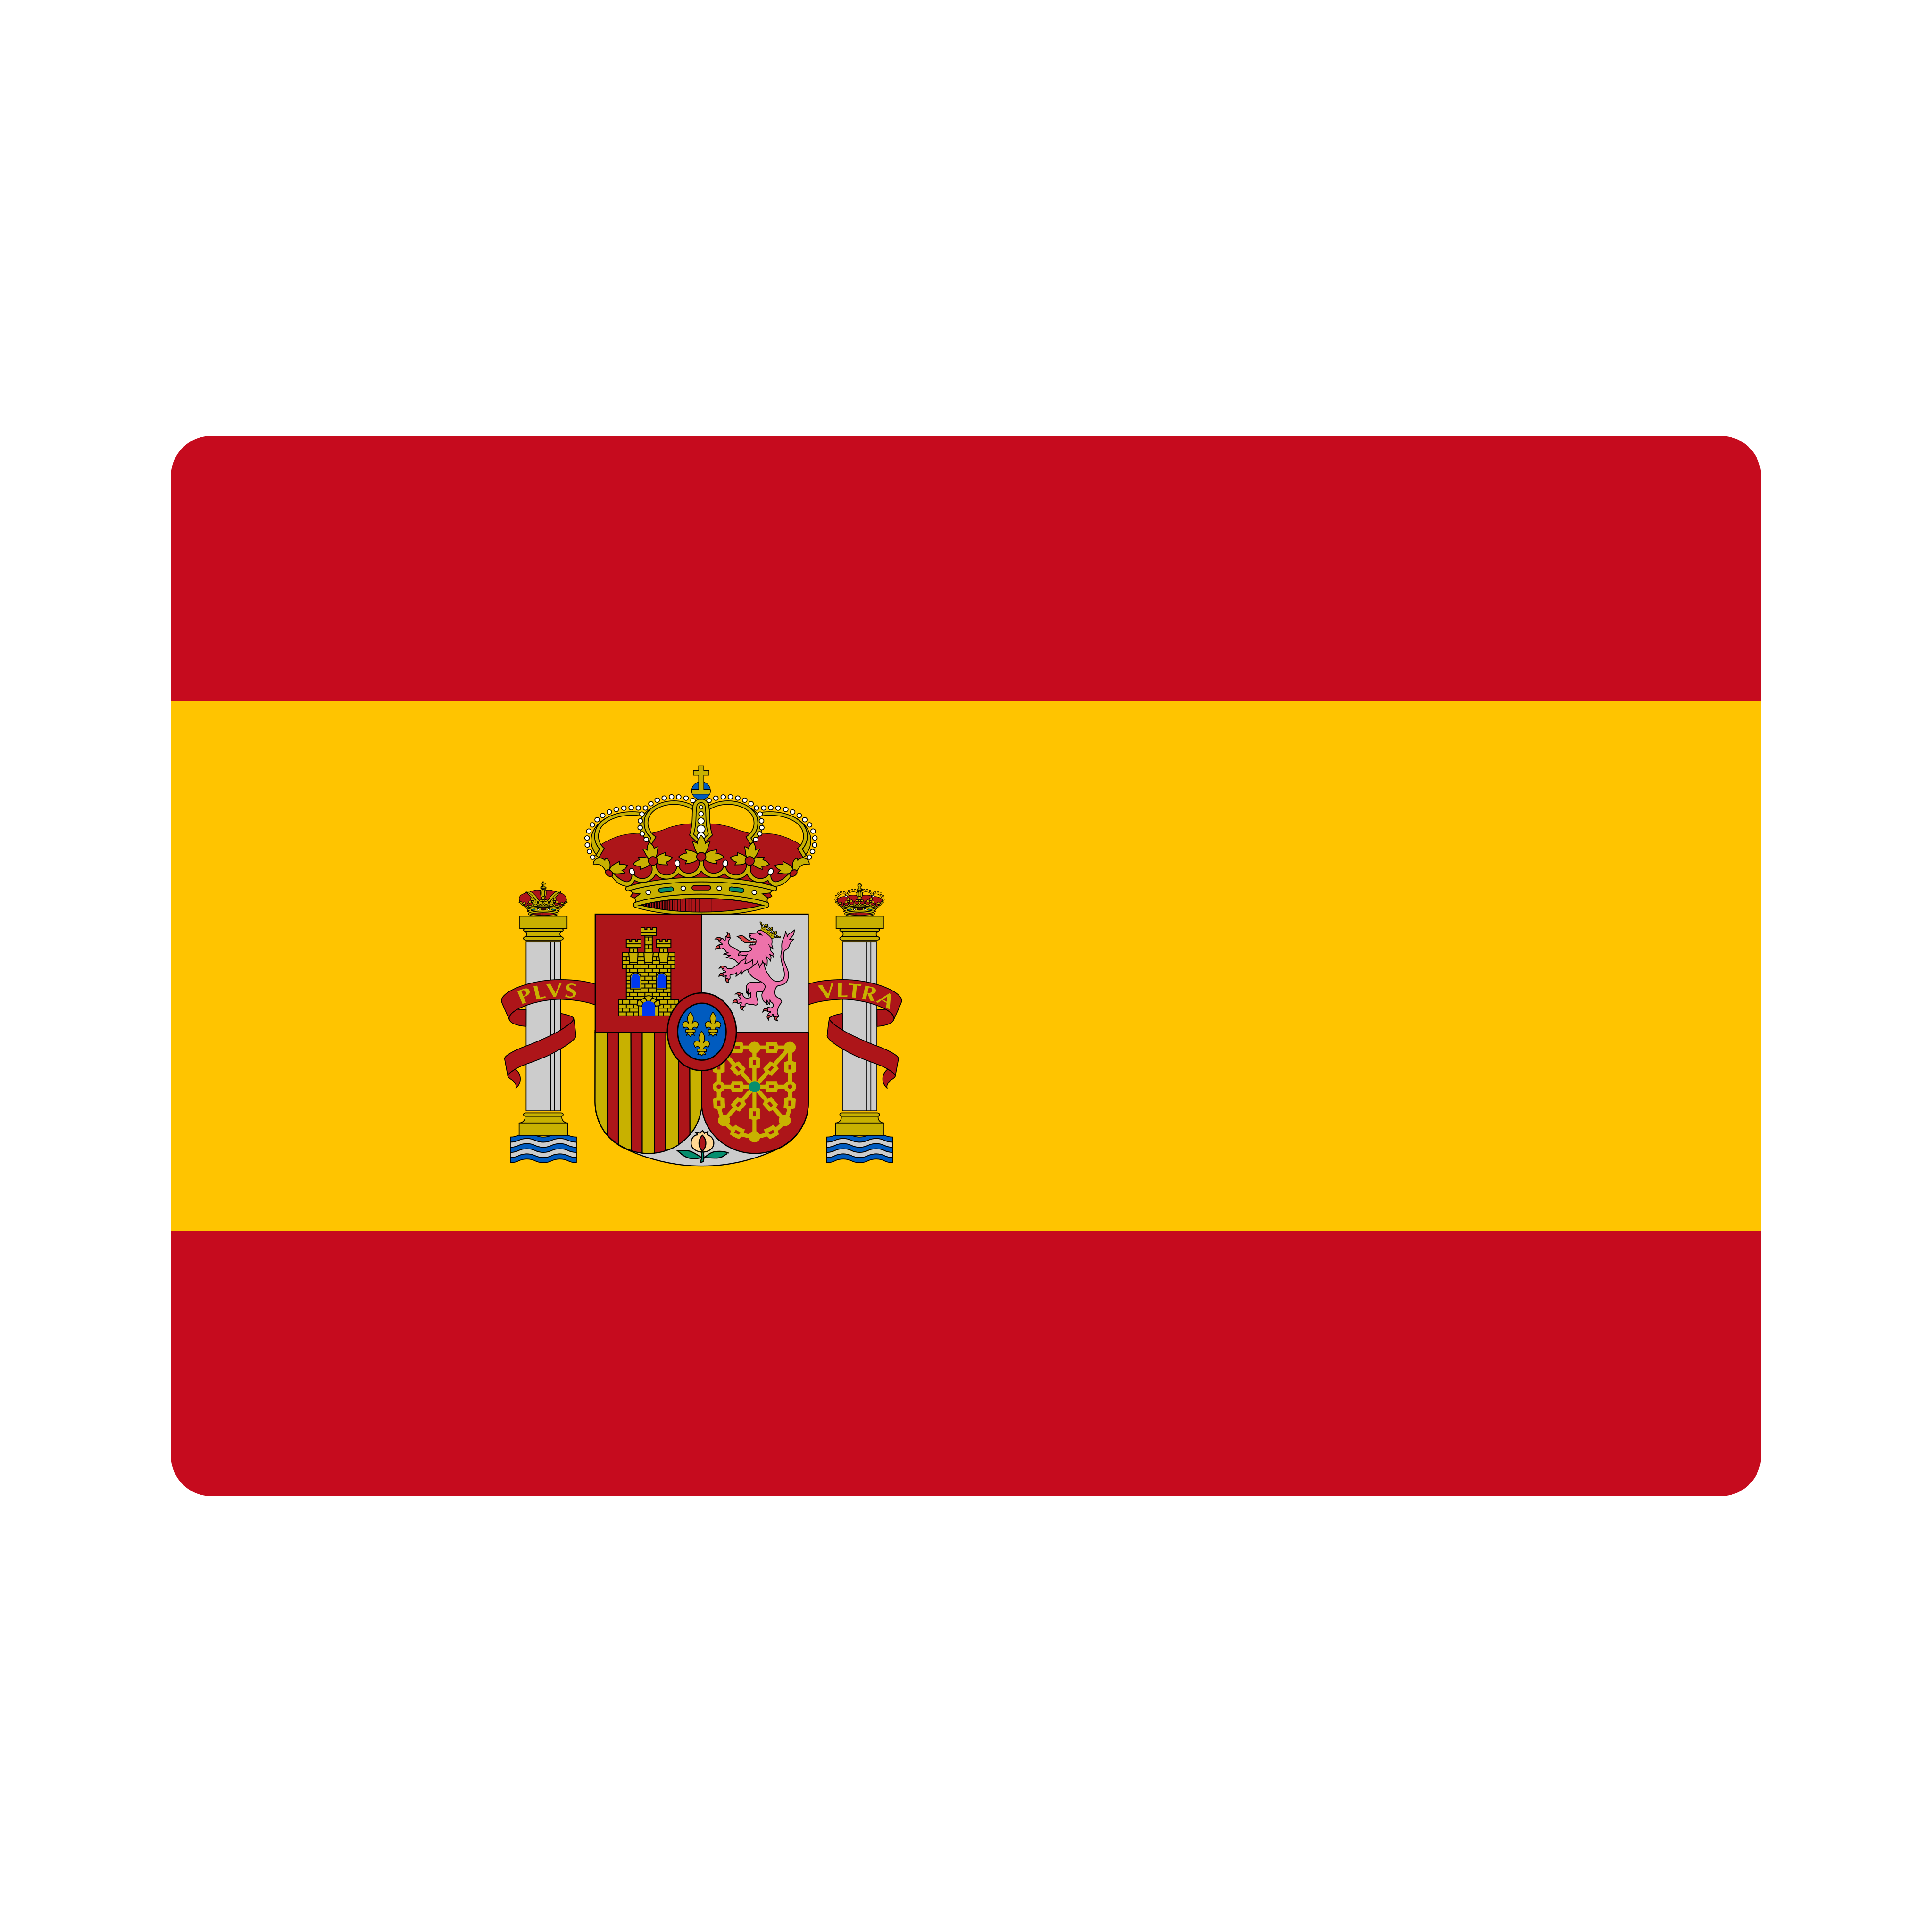 Bandeira Espanha - Spain Flag PNG.